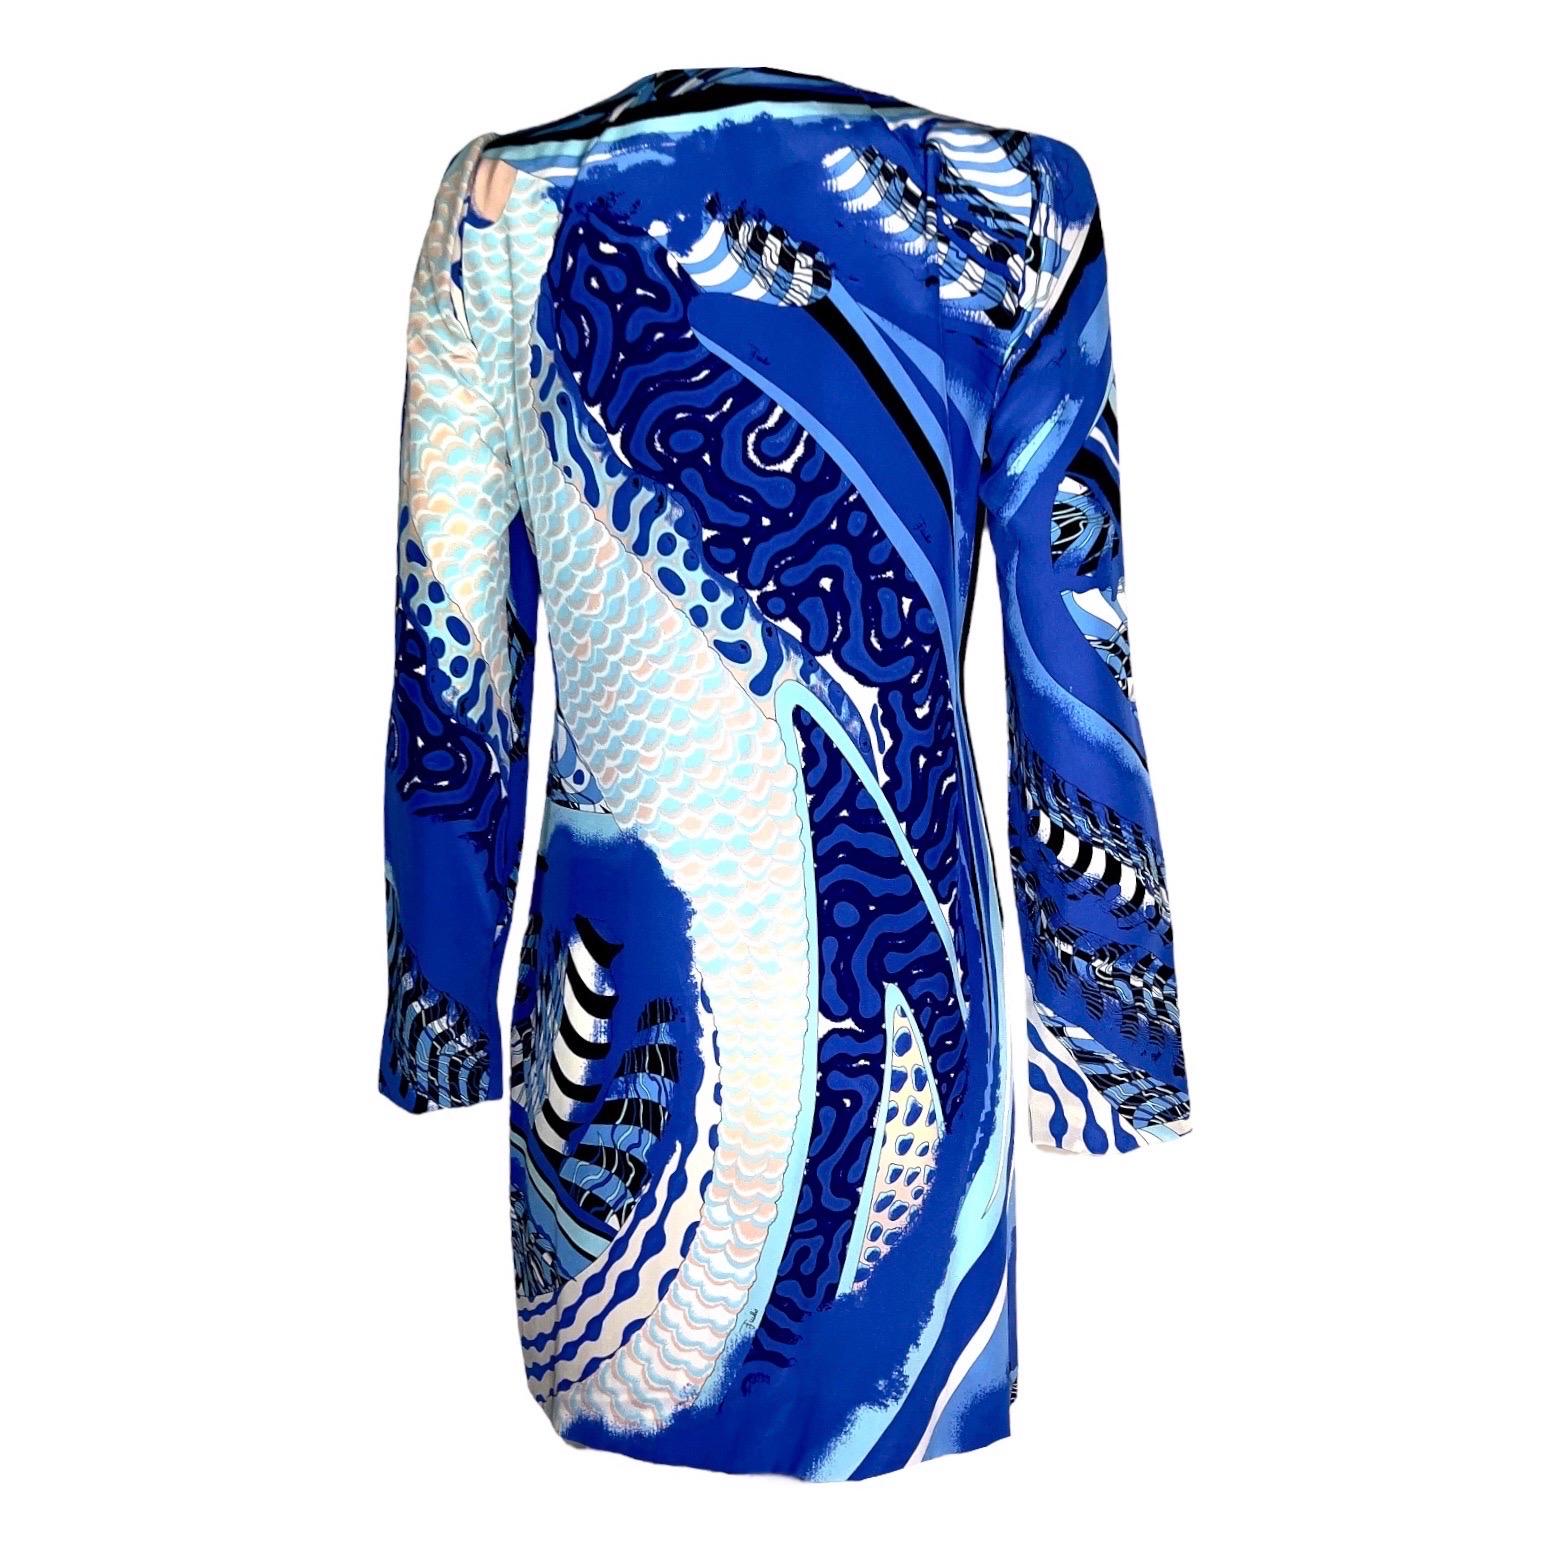 Women's UNWORN Emilio Pucci Signature Print Faux Wrap Dress with Zip Details 44